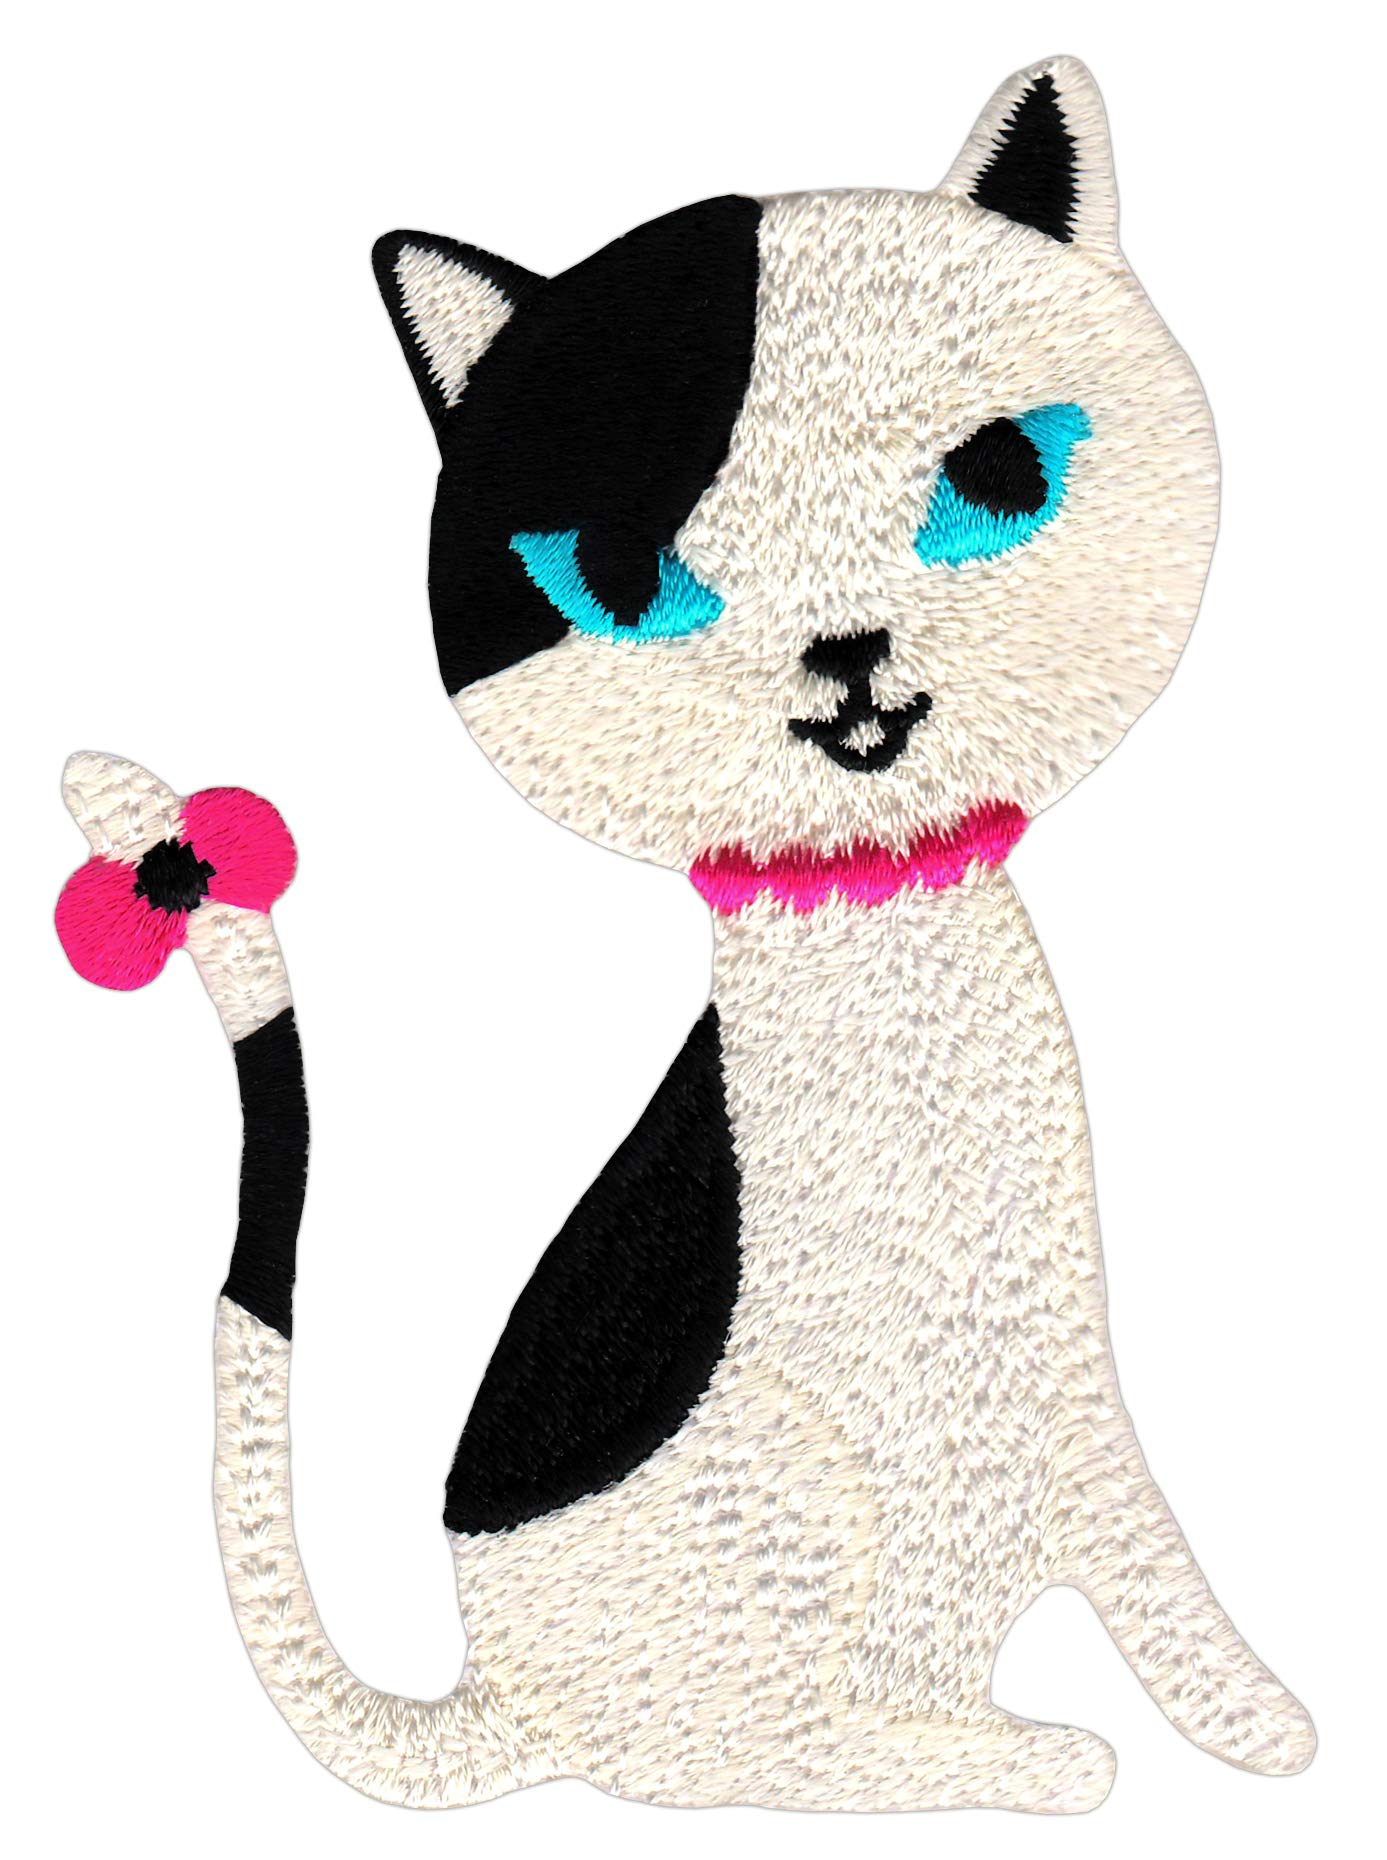 Bestellmich Schwarz Weiße Katze Aufnäher Bügelbild Patch Applikation Größe 6,6 x 9,0 cm von Bestellmich